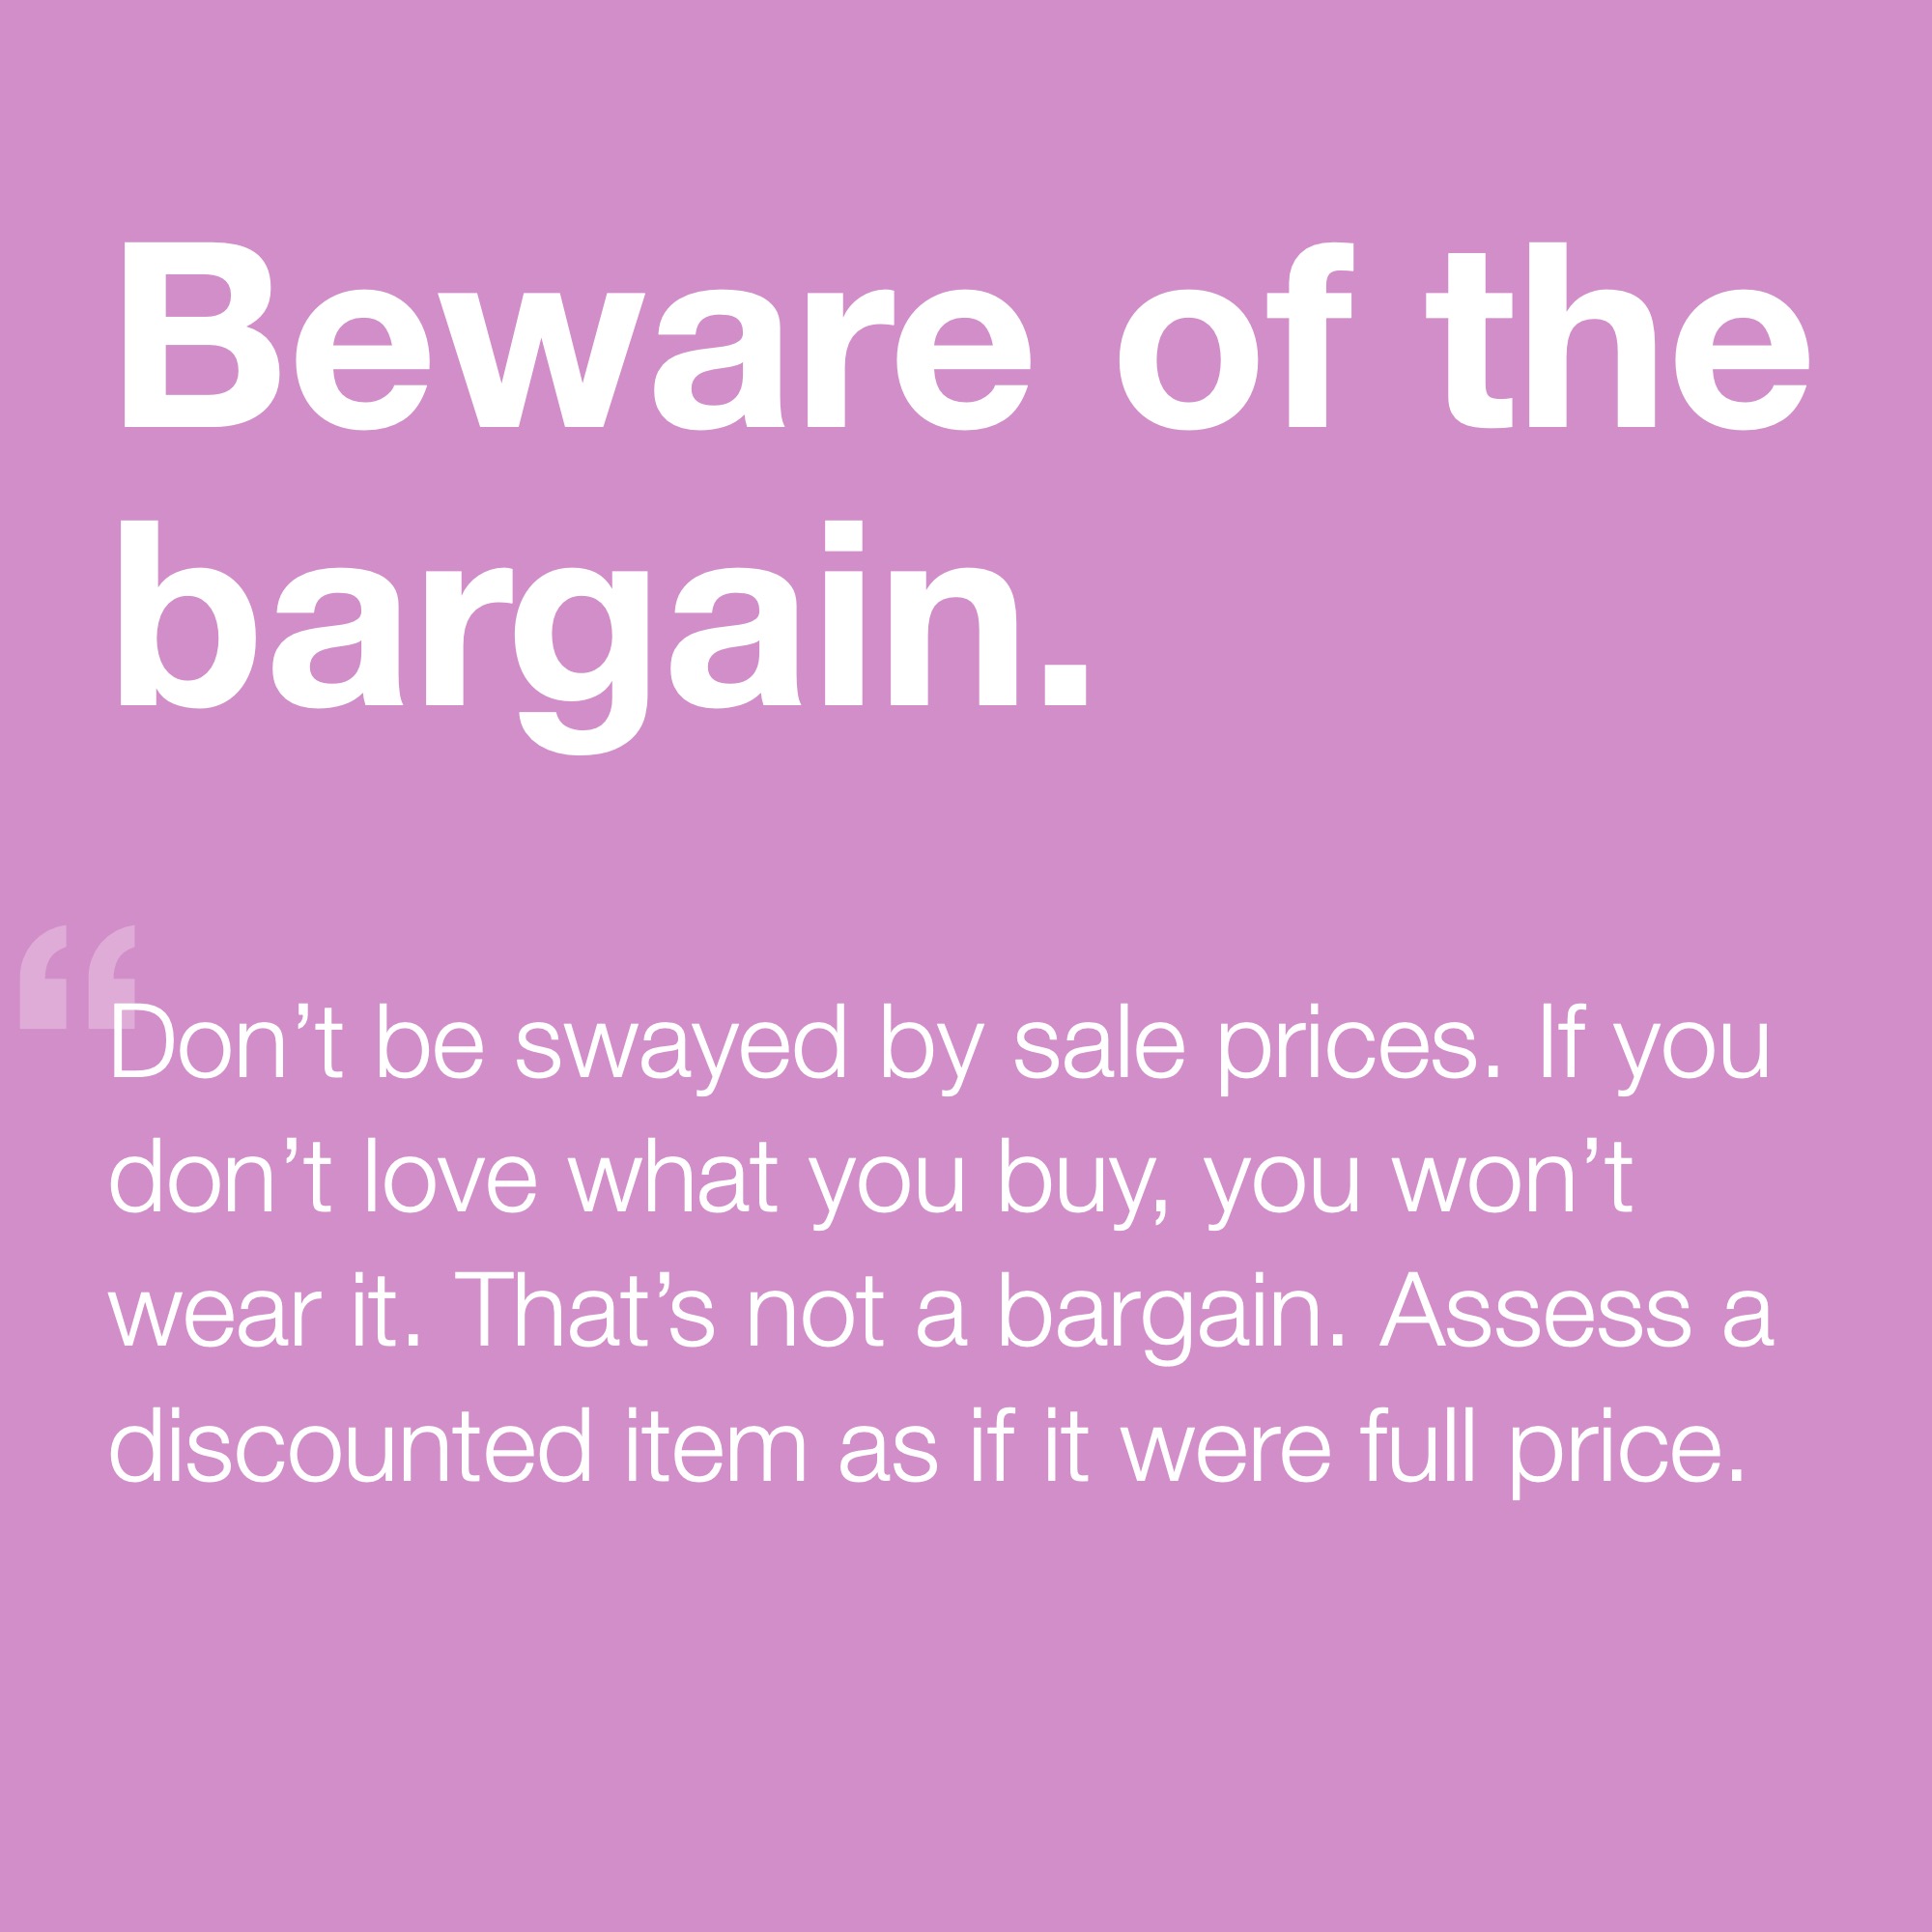 Beware of the Bargain